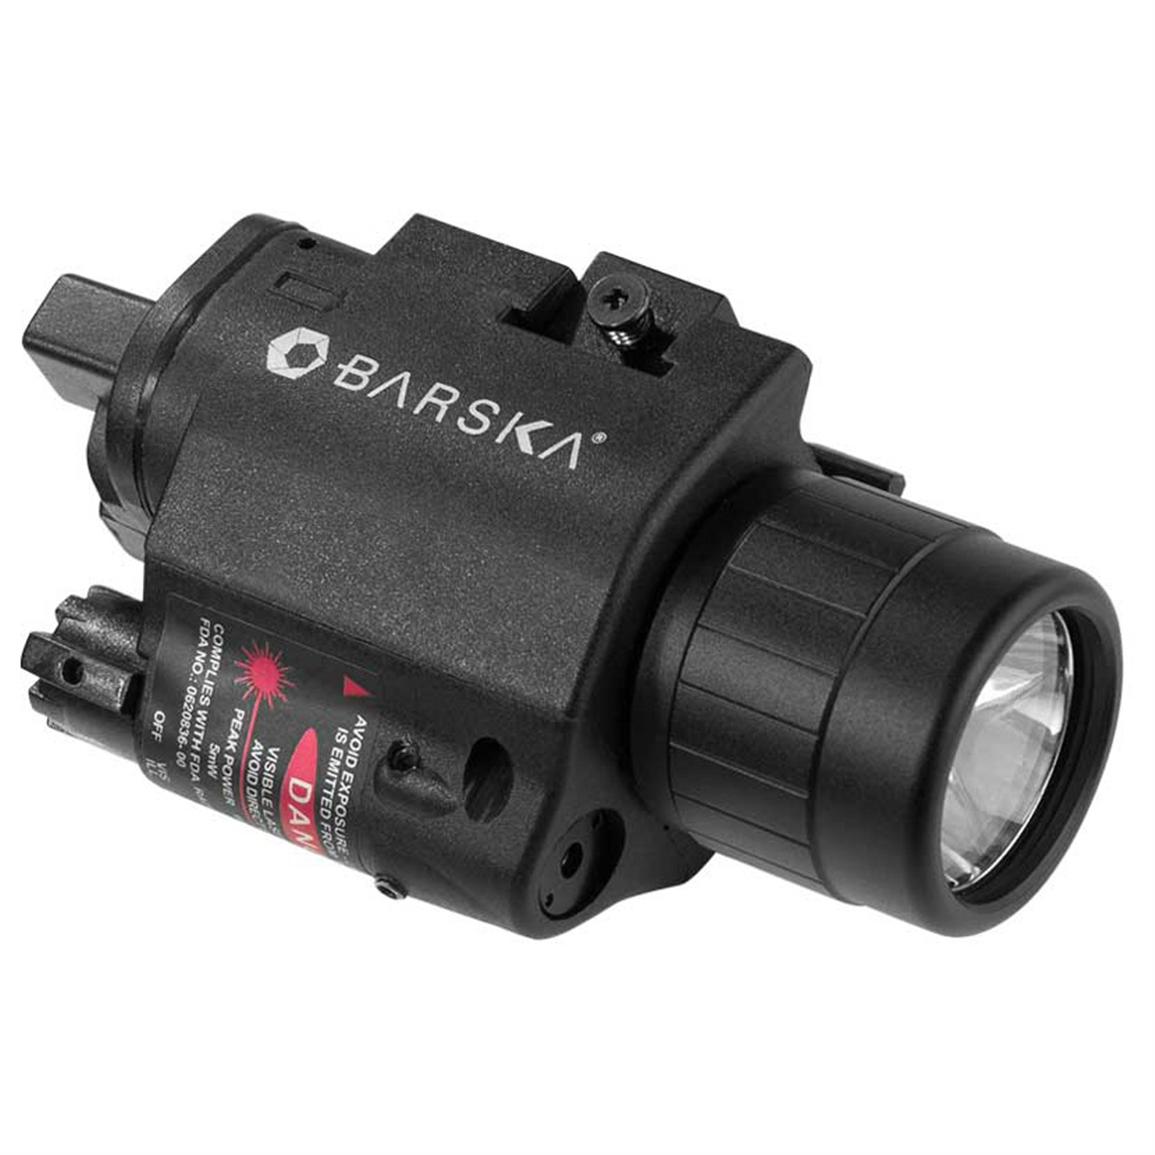 BARSKA Laser with 200 Lumen Flashlight Black 